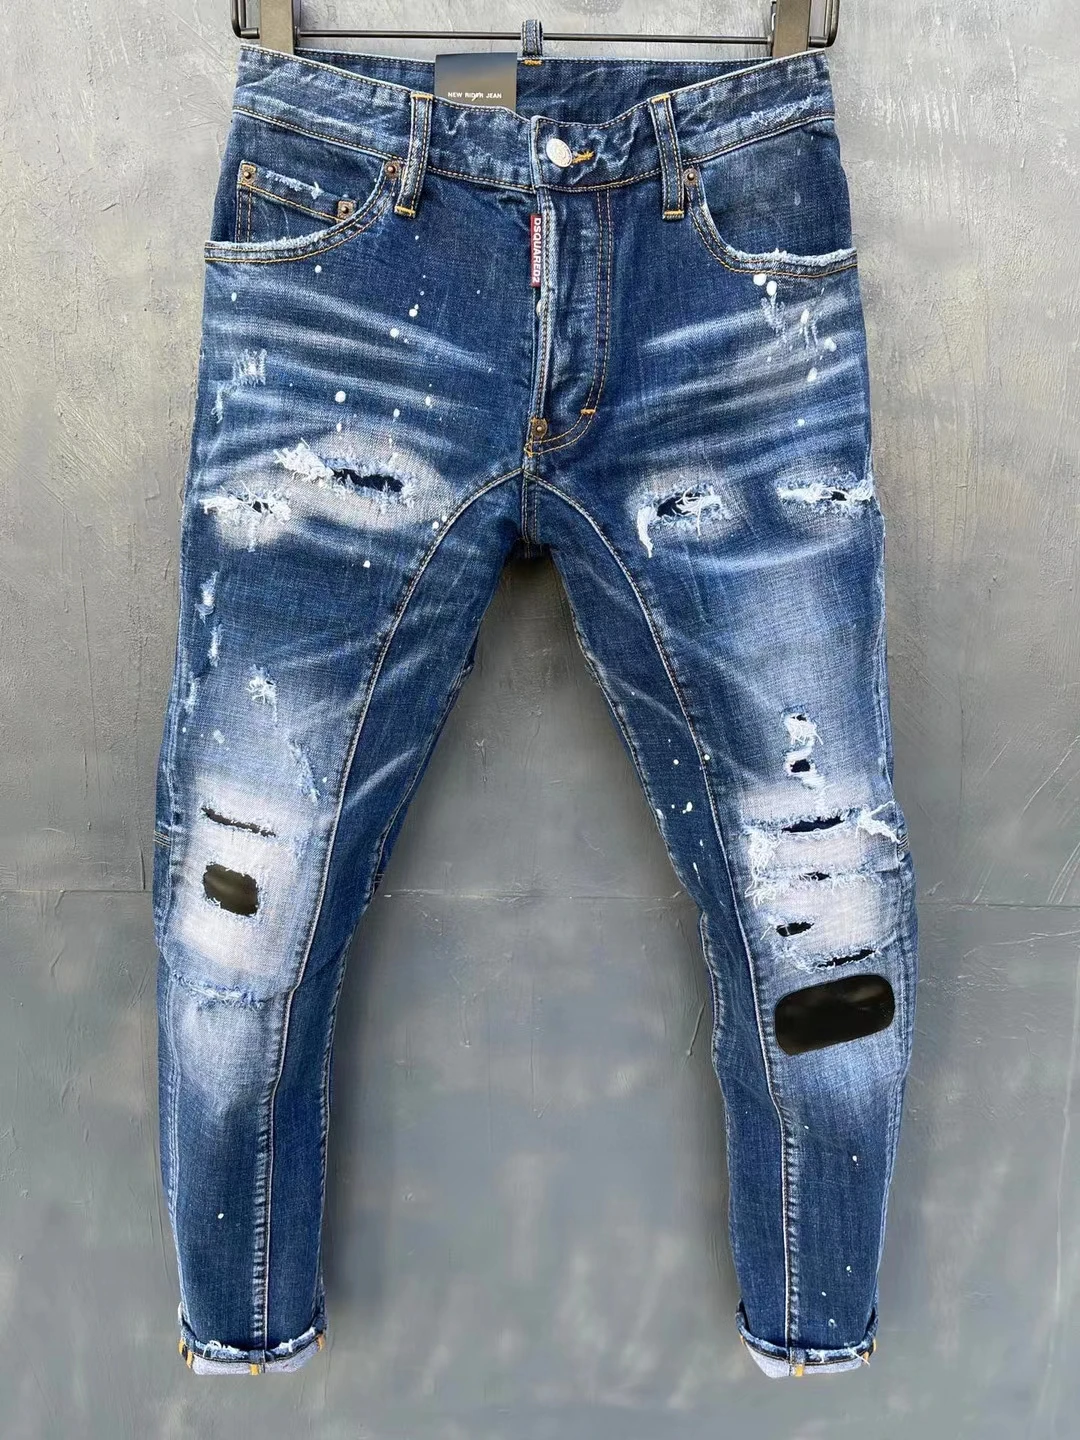 

Dsquared2 Women's/Men's Rivet Decoration Hole Black Patch Scratched Ripped Fashion Pencil Pants Jeans T151#